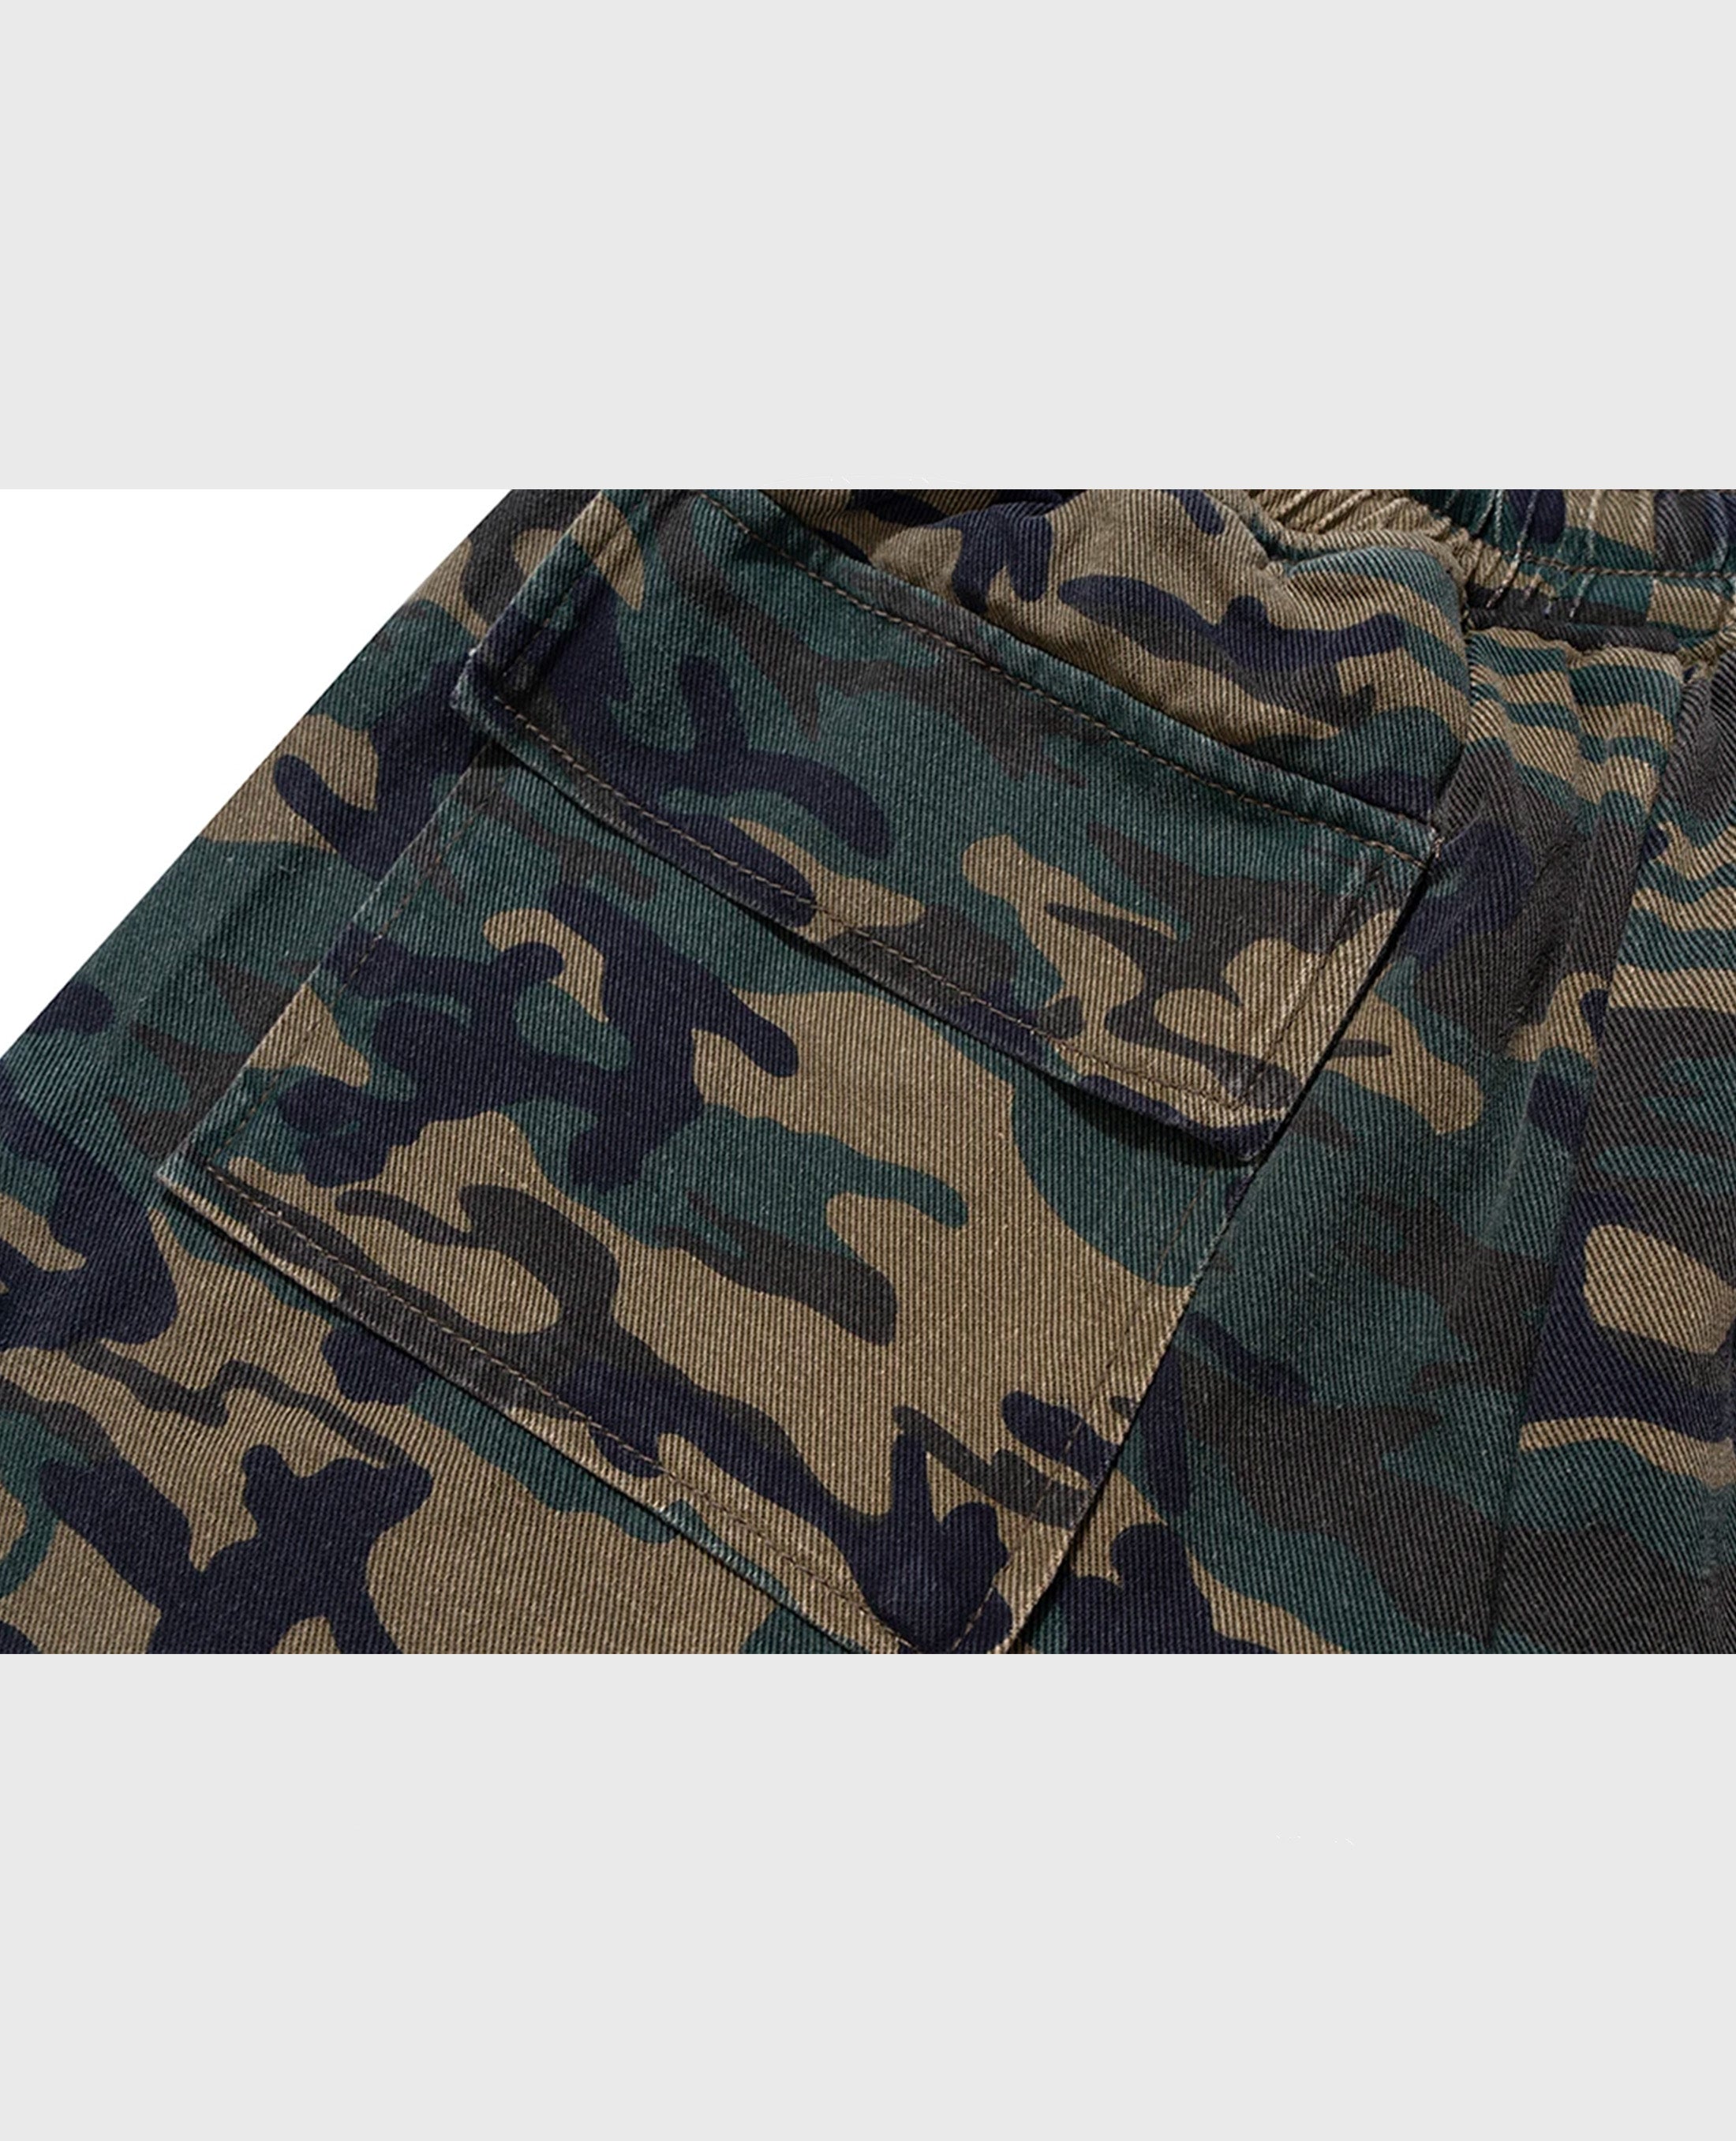 Dark Camouflage Shorts